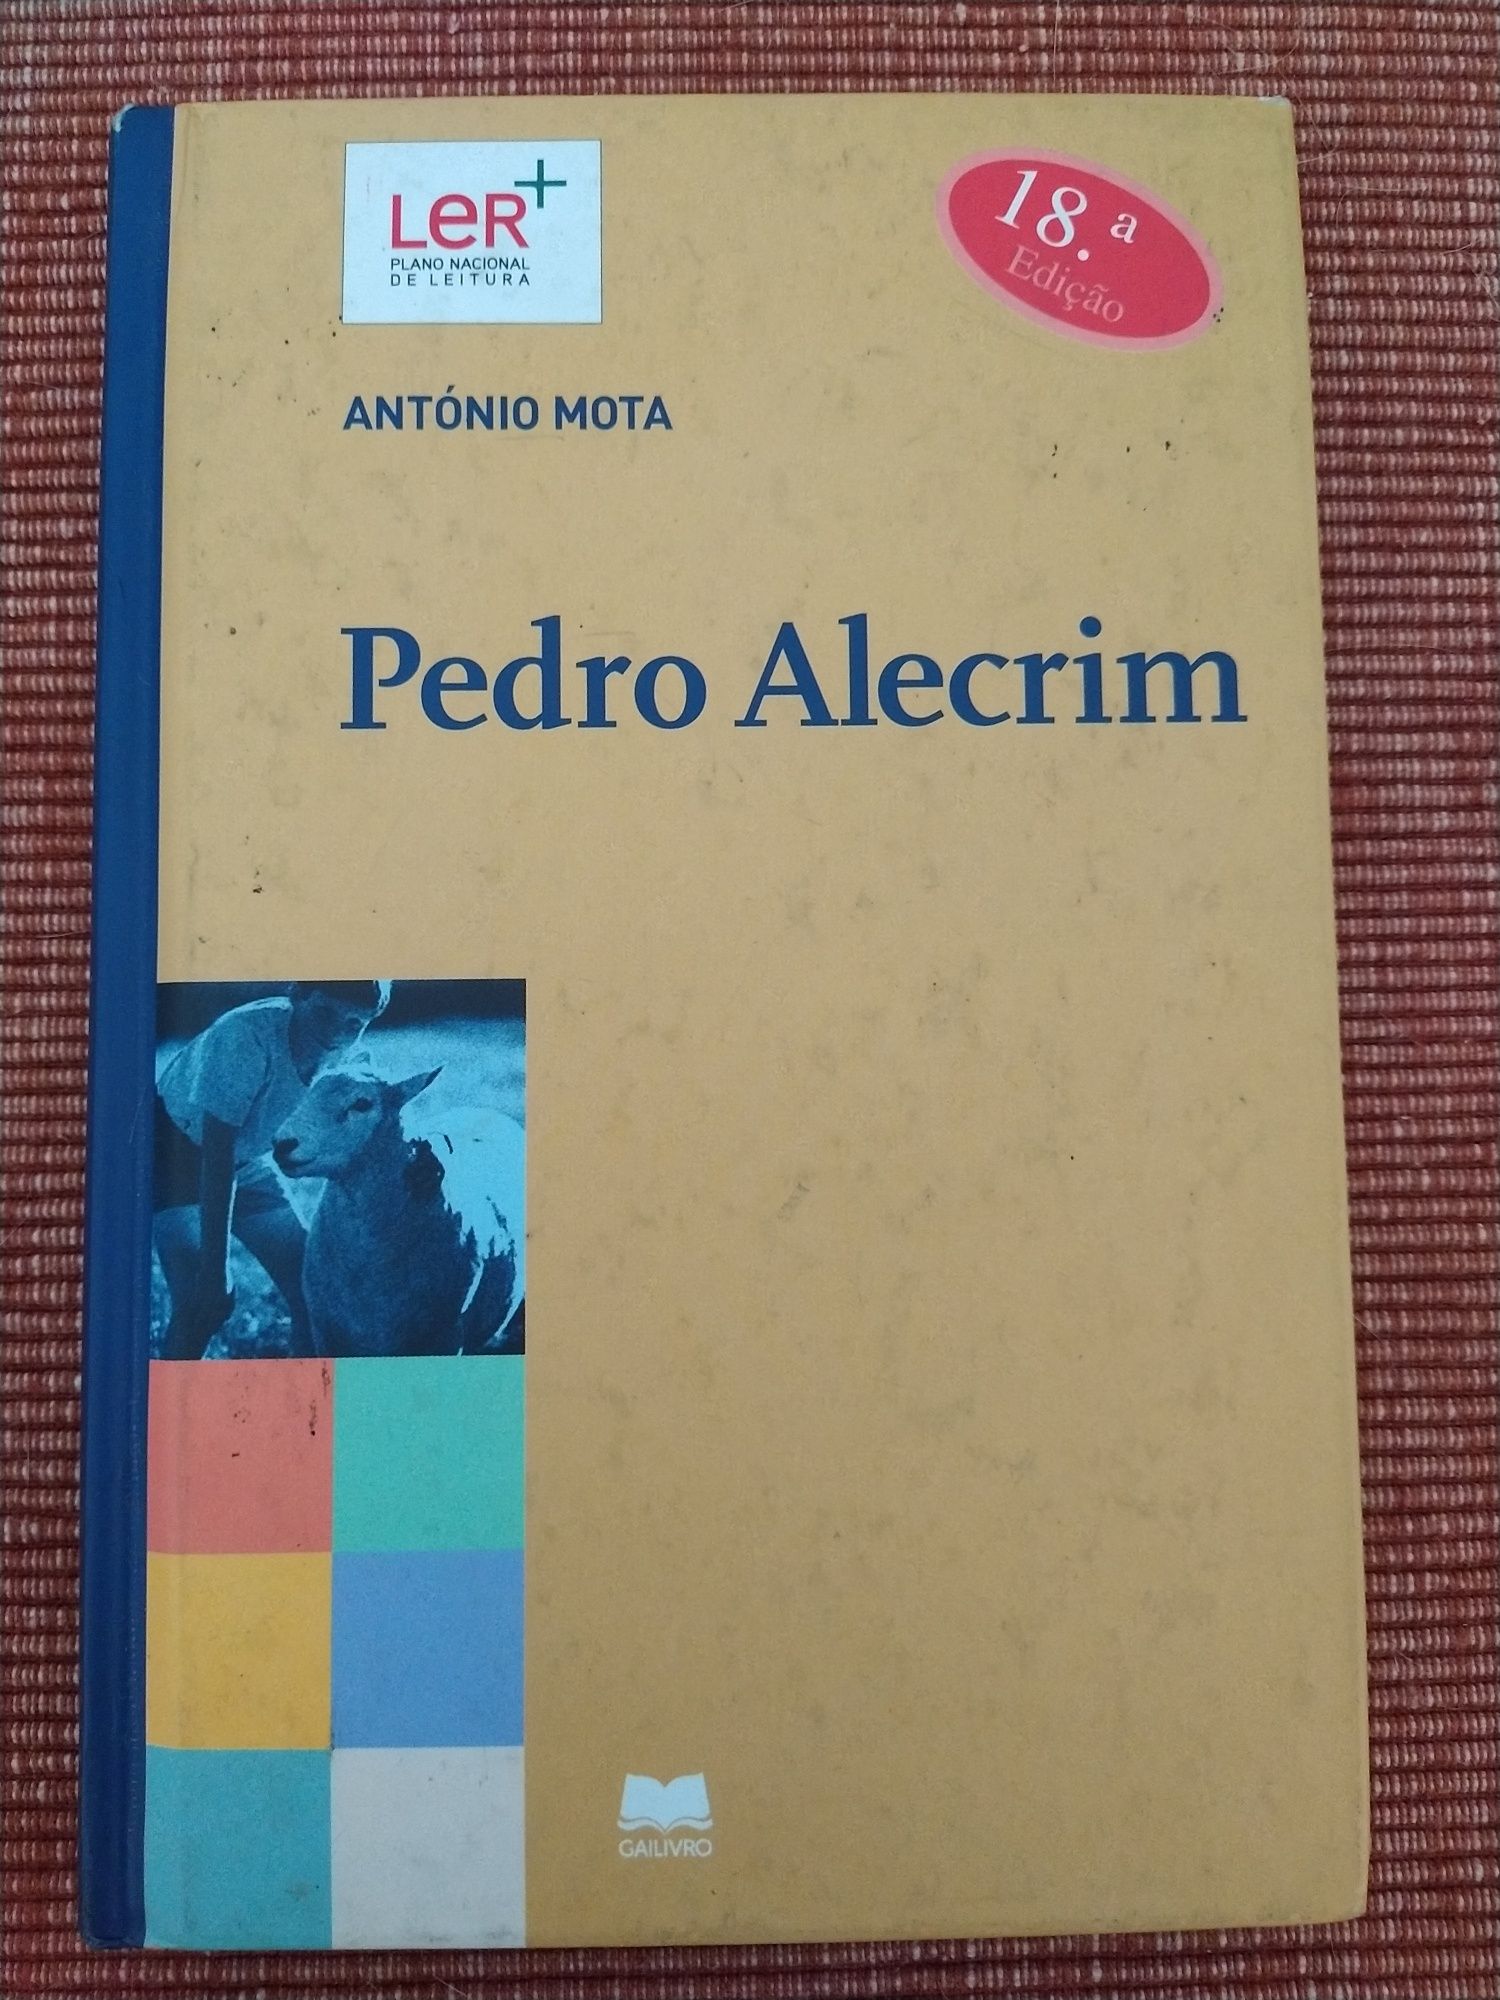 Livro "Pedro Alecrim" - António Mota